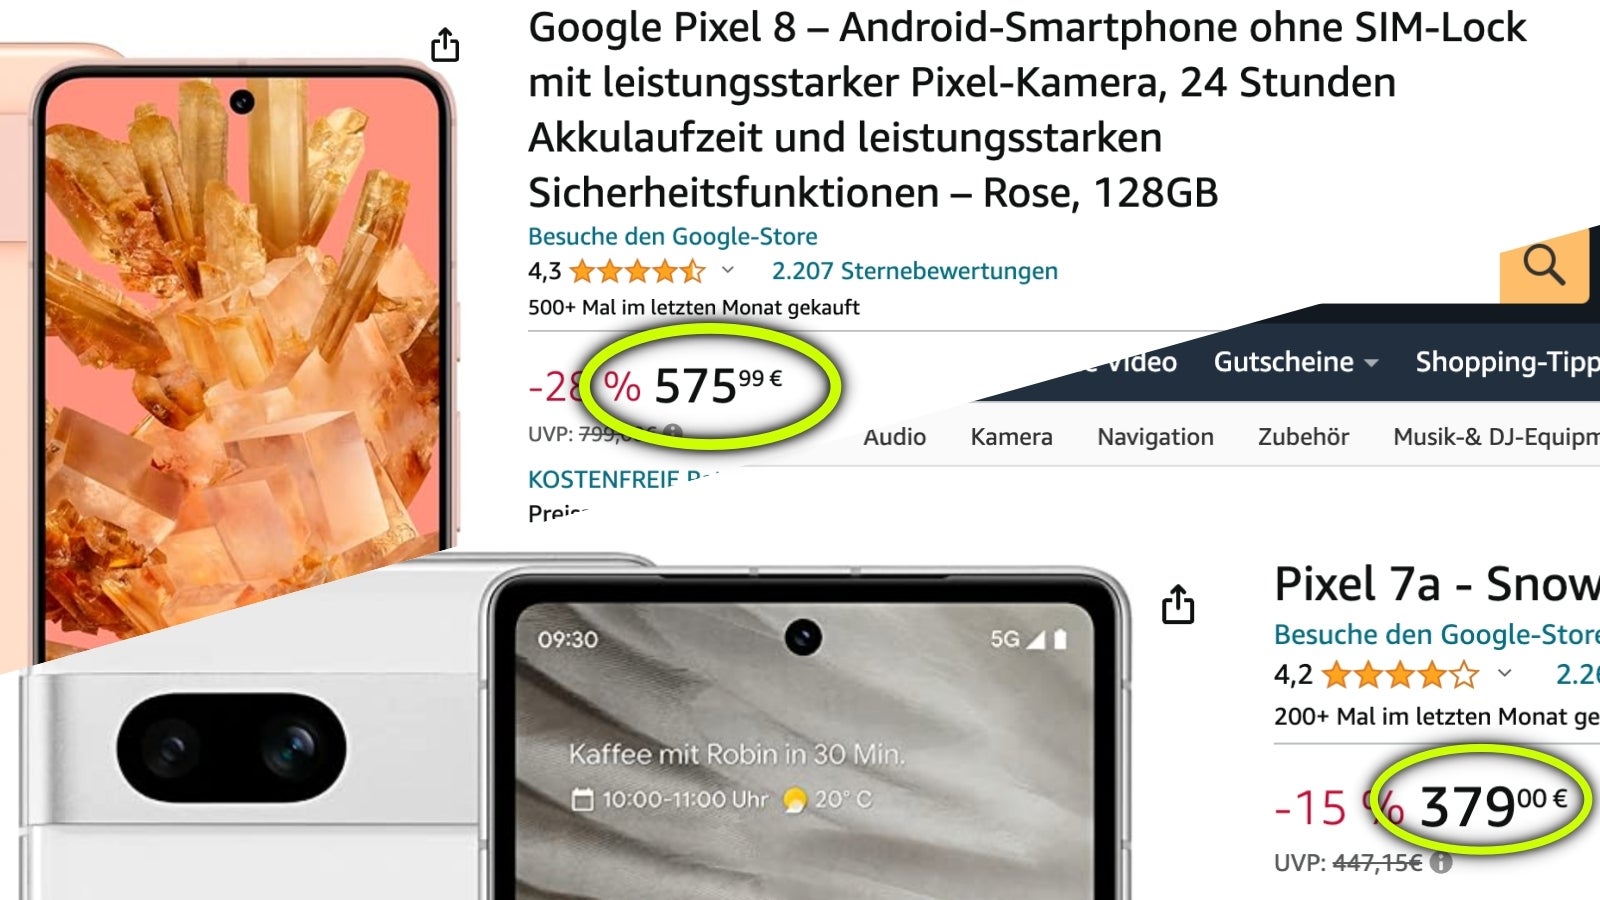 Avrupa'da 700 € değerindeki Motorola Edge 50 Pro, Pixel 8'in yanında pahalı görünüyor, Pixel 7a ise neredeyse yarı fiyatına (indirimde).  - Motorola'nın süper telefonunun maliyeti Hindistan'da 350 Avro, AB'de ise 700 Avro: Basit ekonomi mi, yoksa zenginleri vergilendirmek mi?